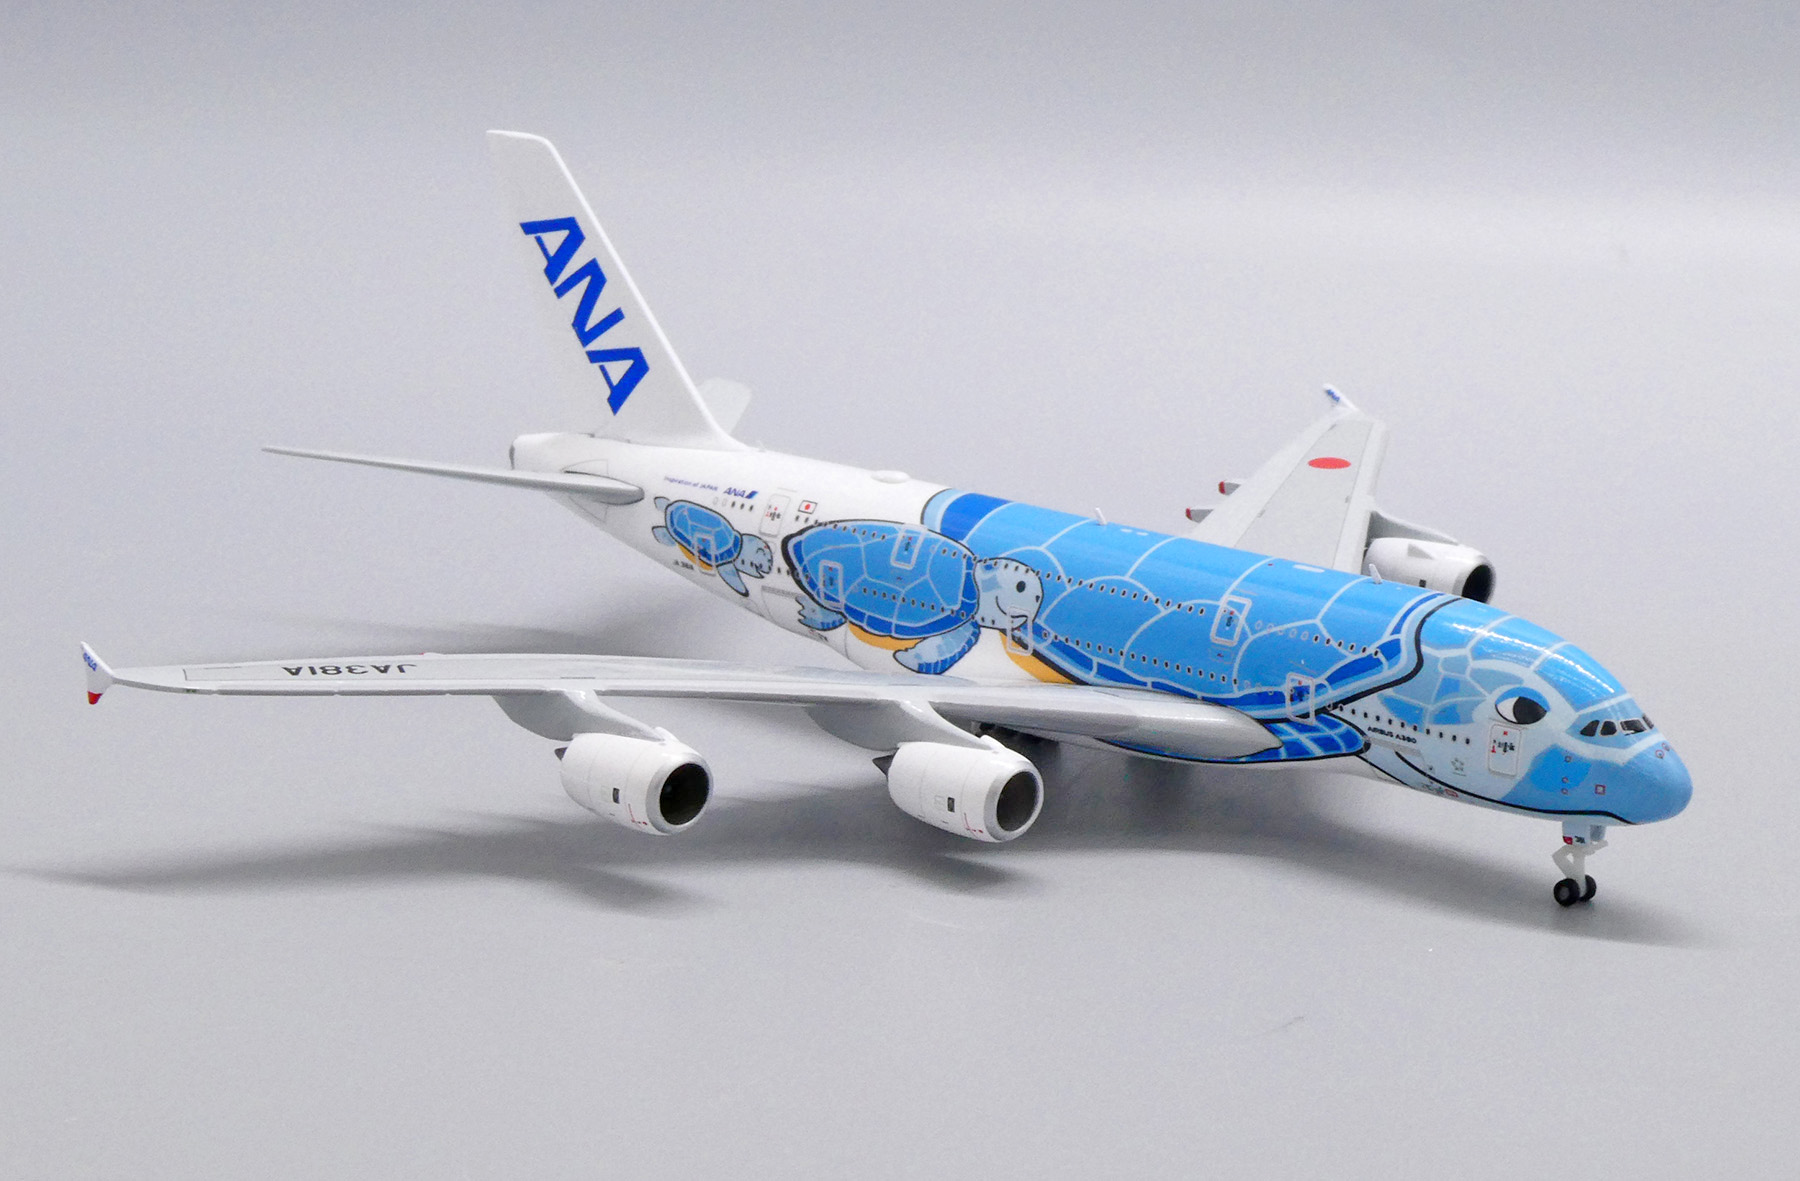 アウトレットの半額 JC 1/400 JA383A La オレンジ A380 ANA wings 模型/プラモデル